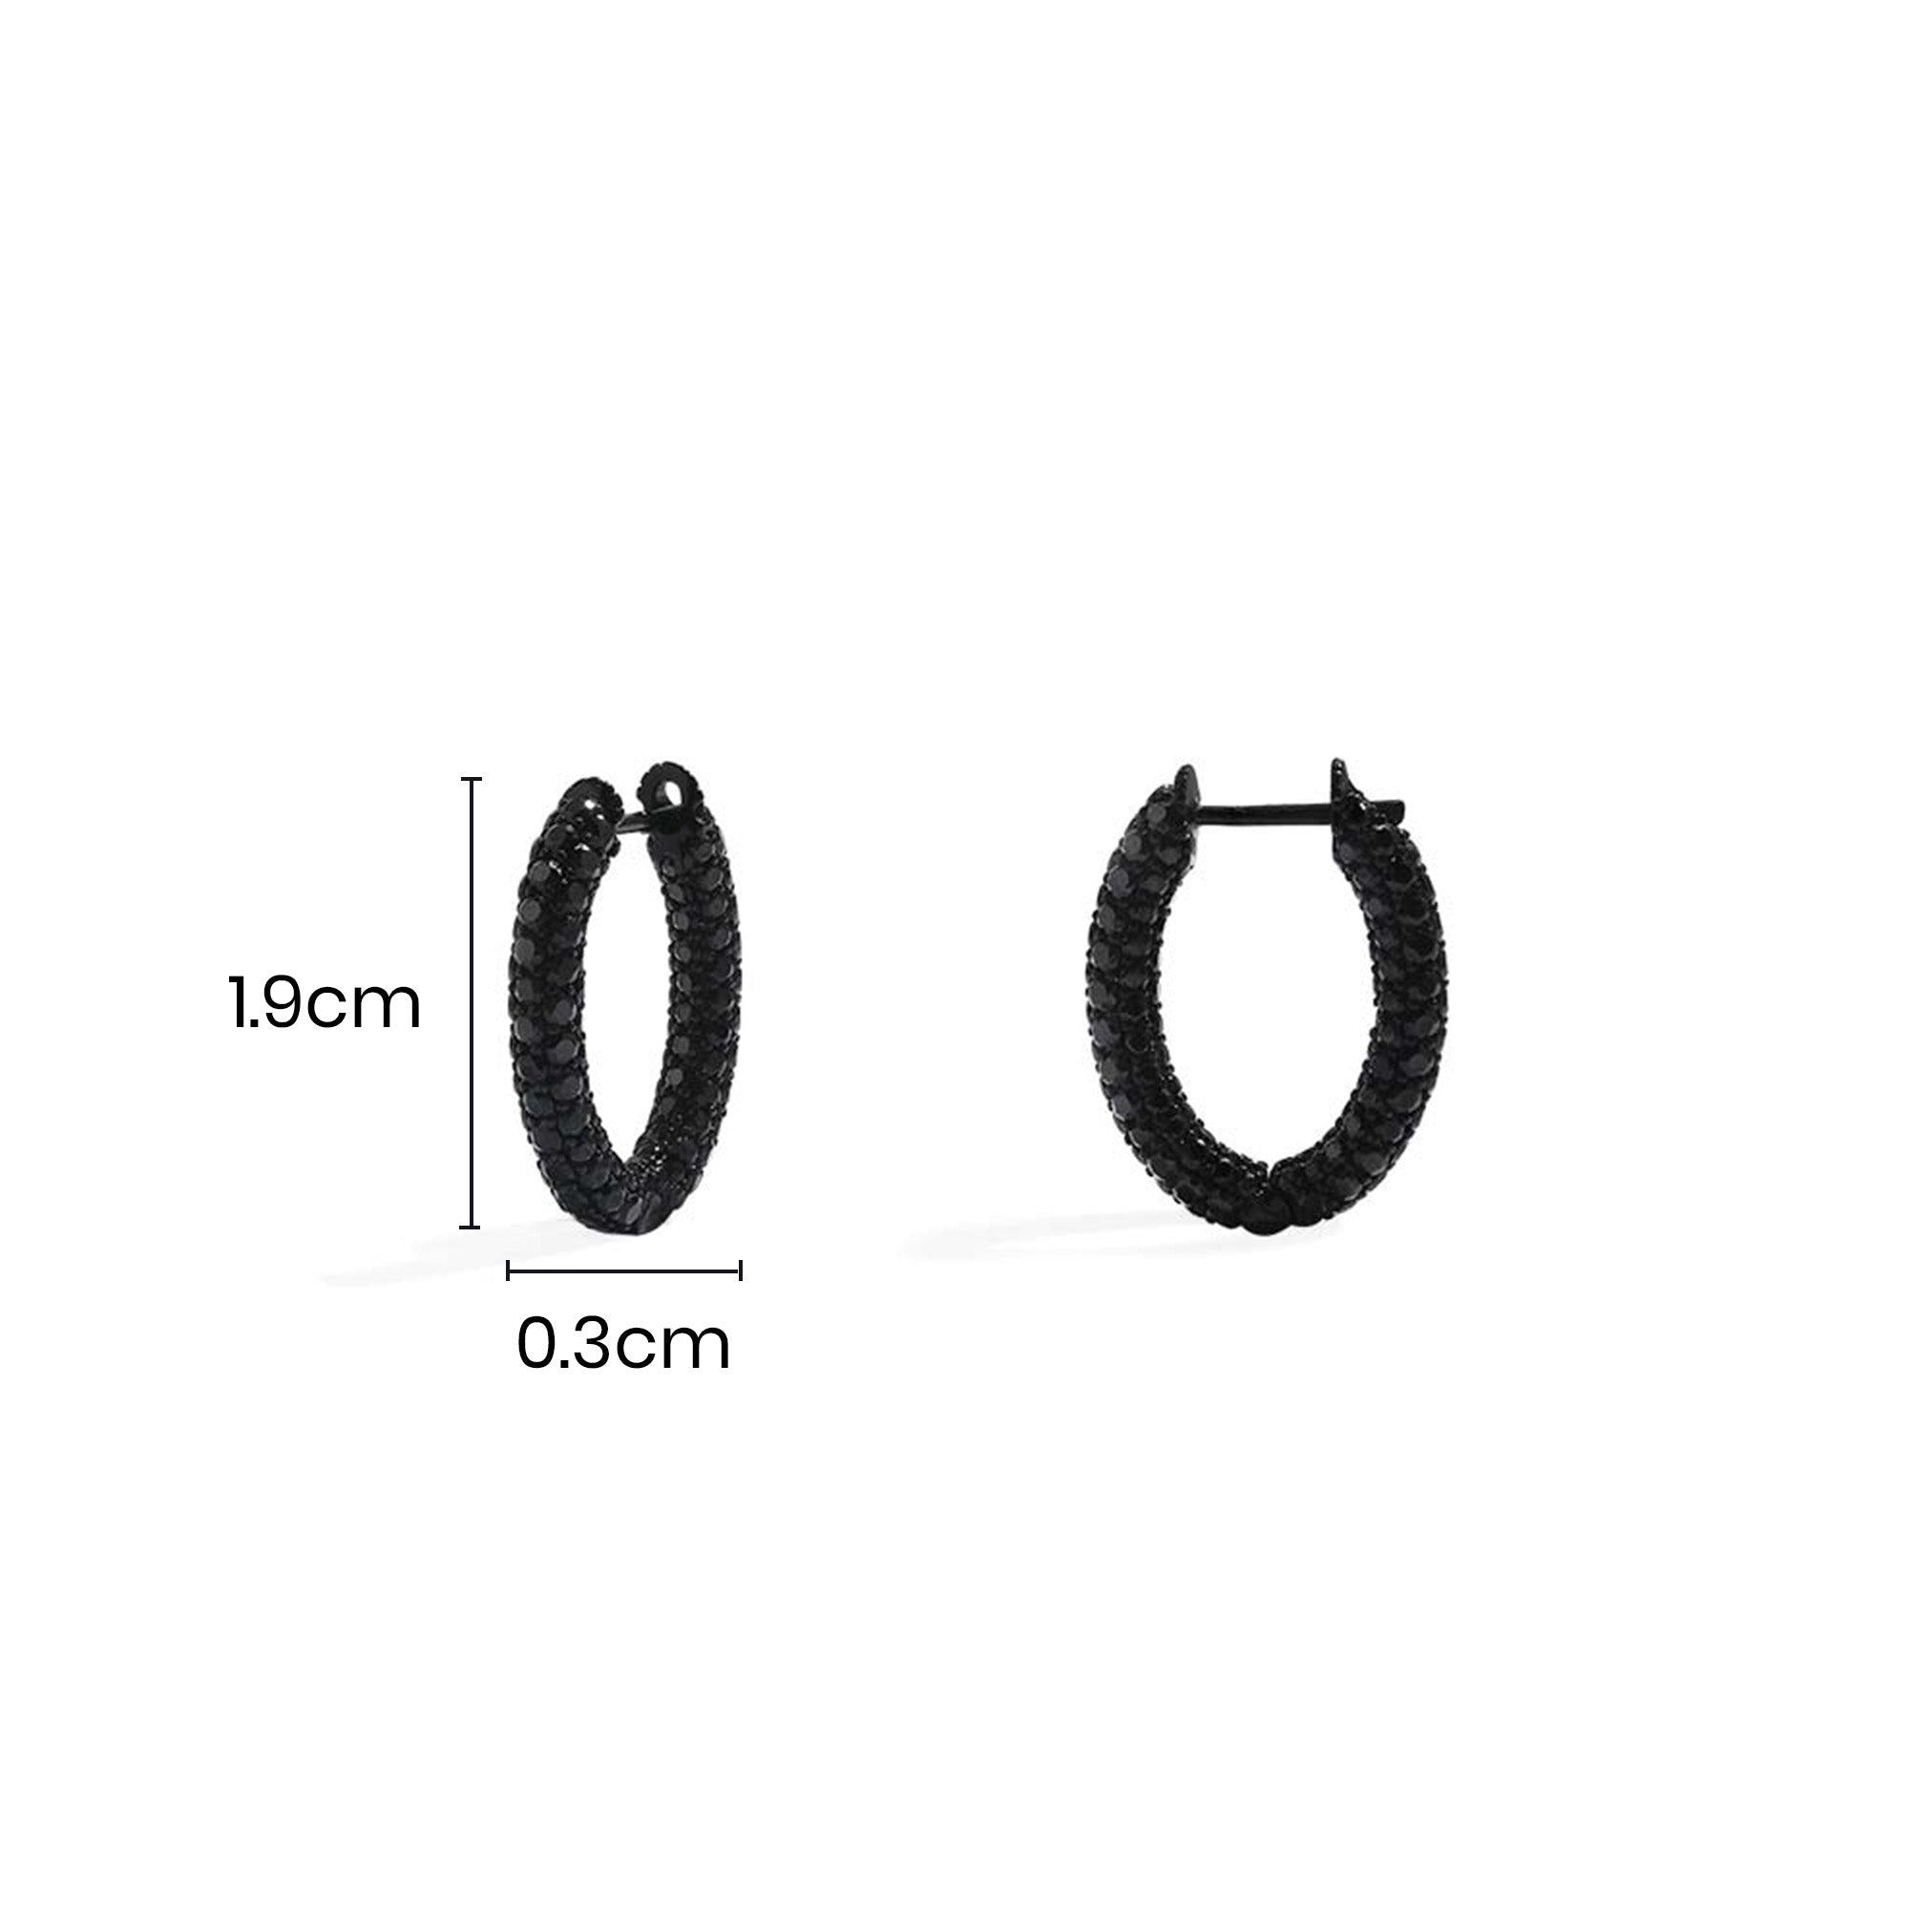 Black Pavé Hoop Earrings